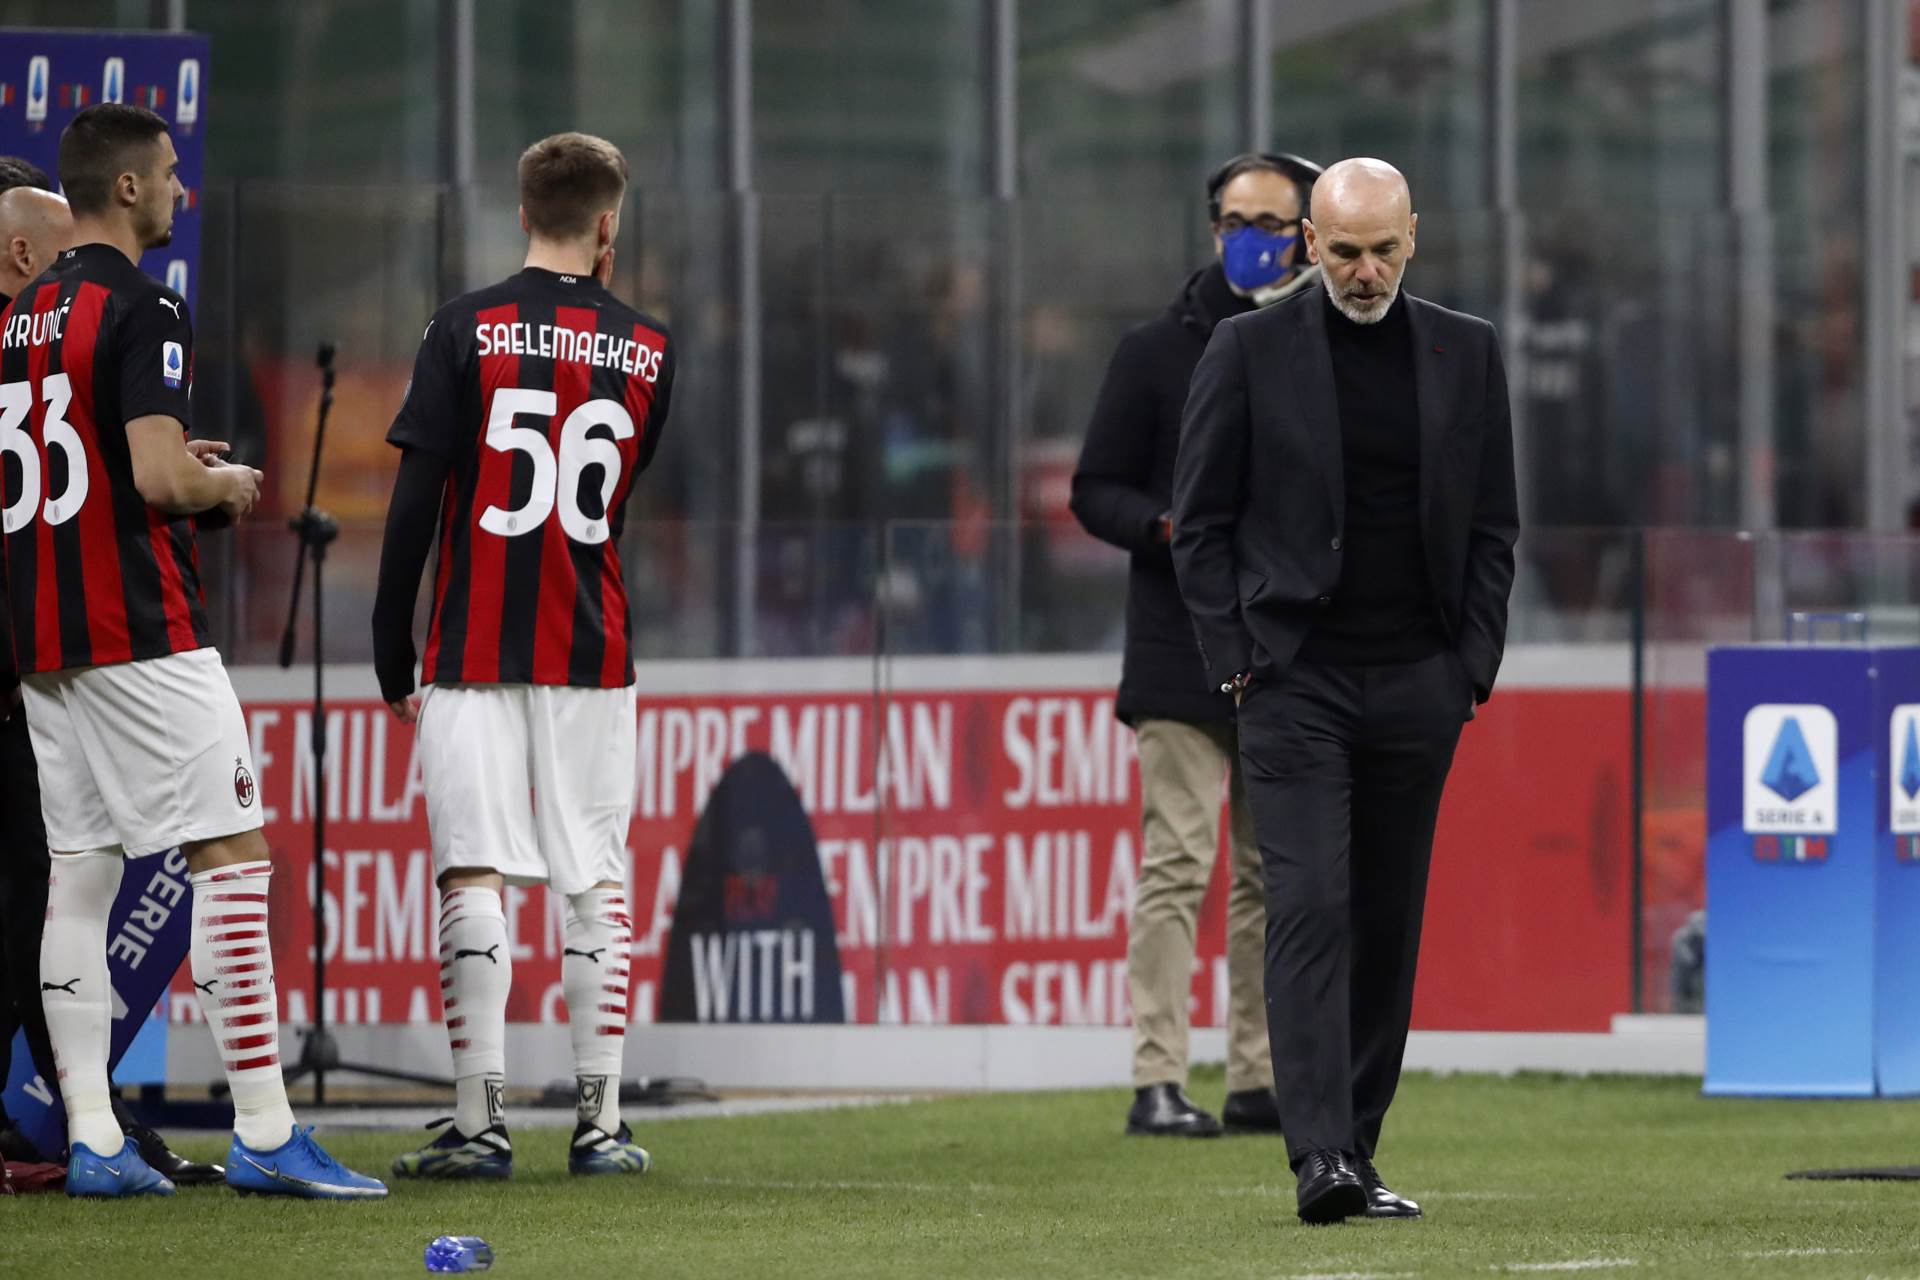  Serija A 25 kolo rezultati Milan - Udineze 1-1 